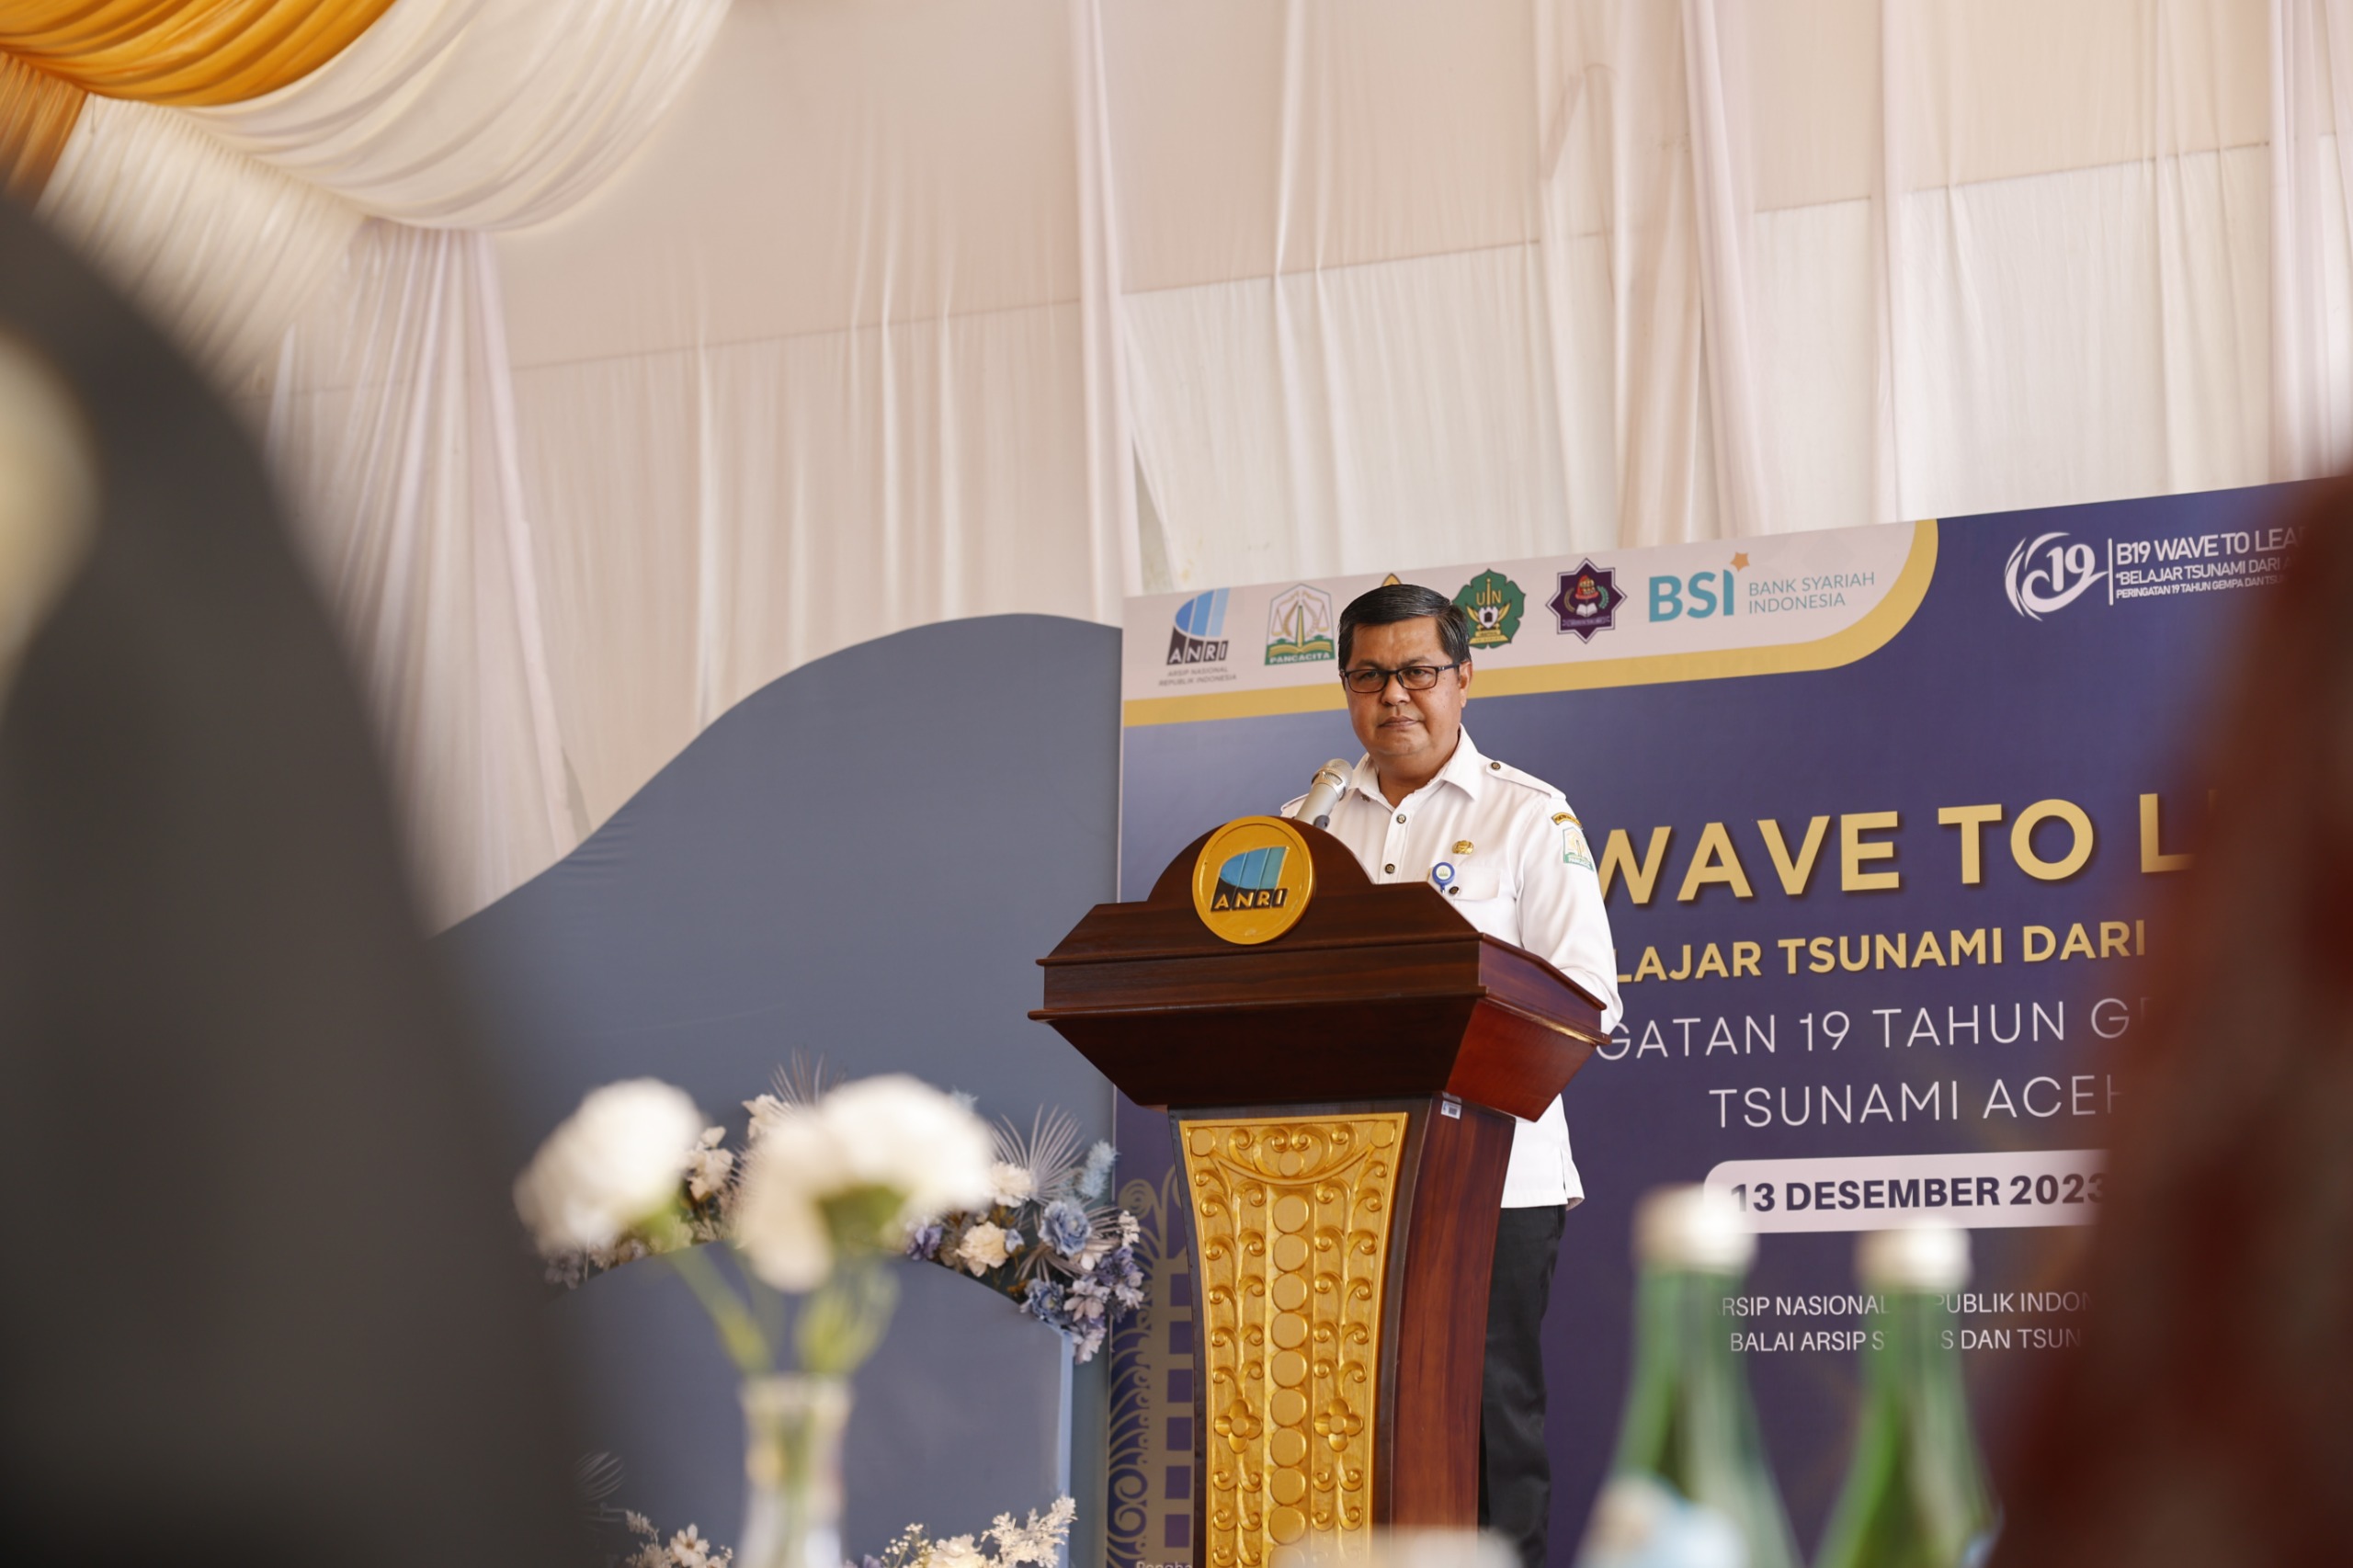 B19 Wave to Learn Jadi Puncak Kegiatan Pameran Arsip Kebencanaan/Arsip Tsunami